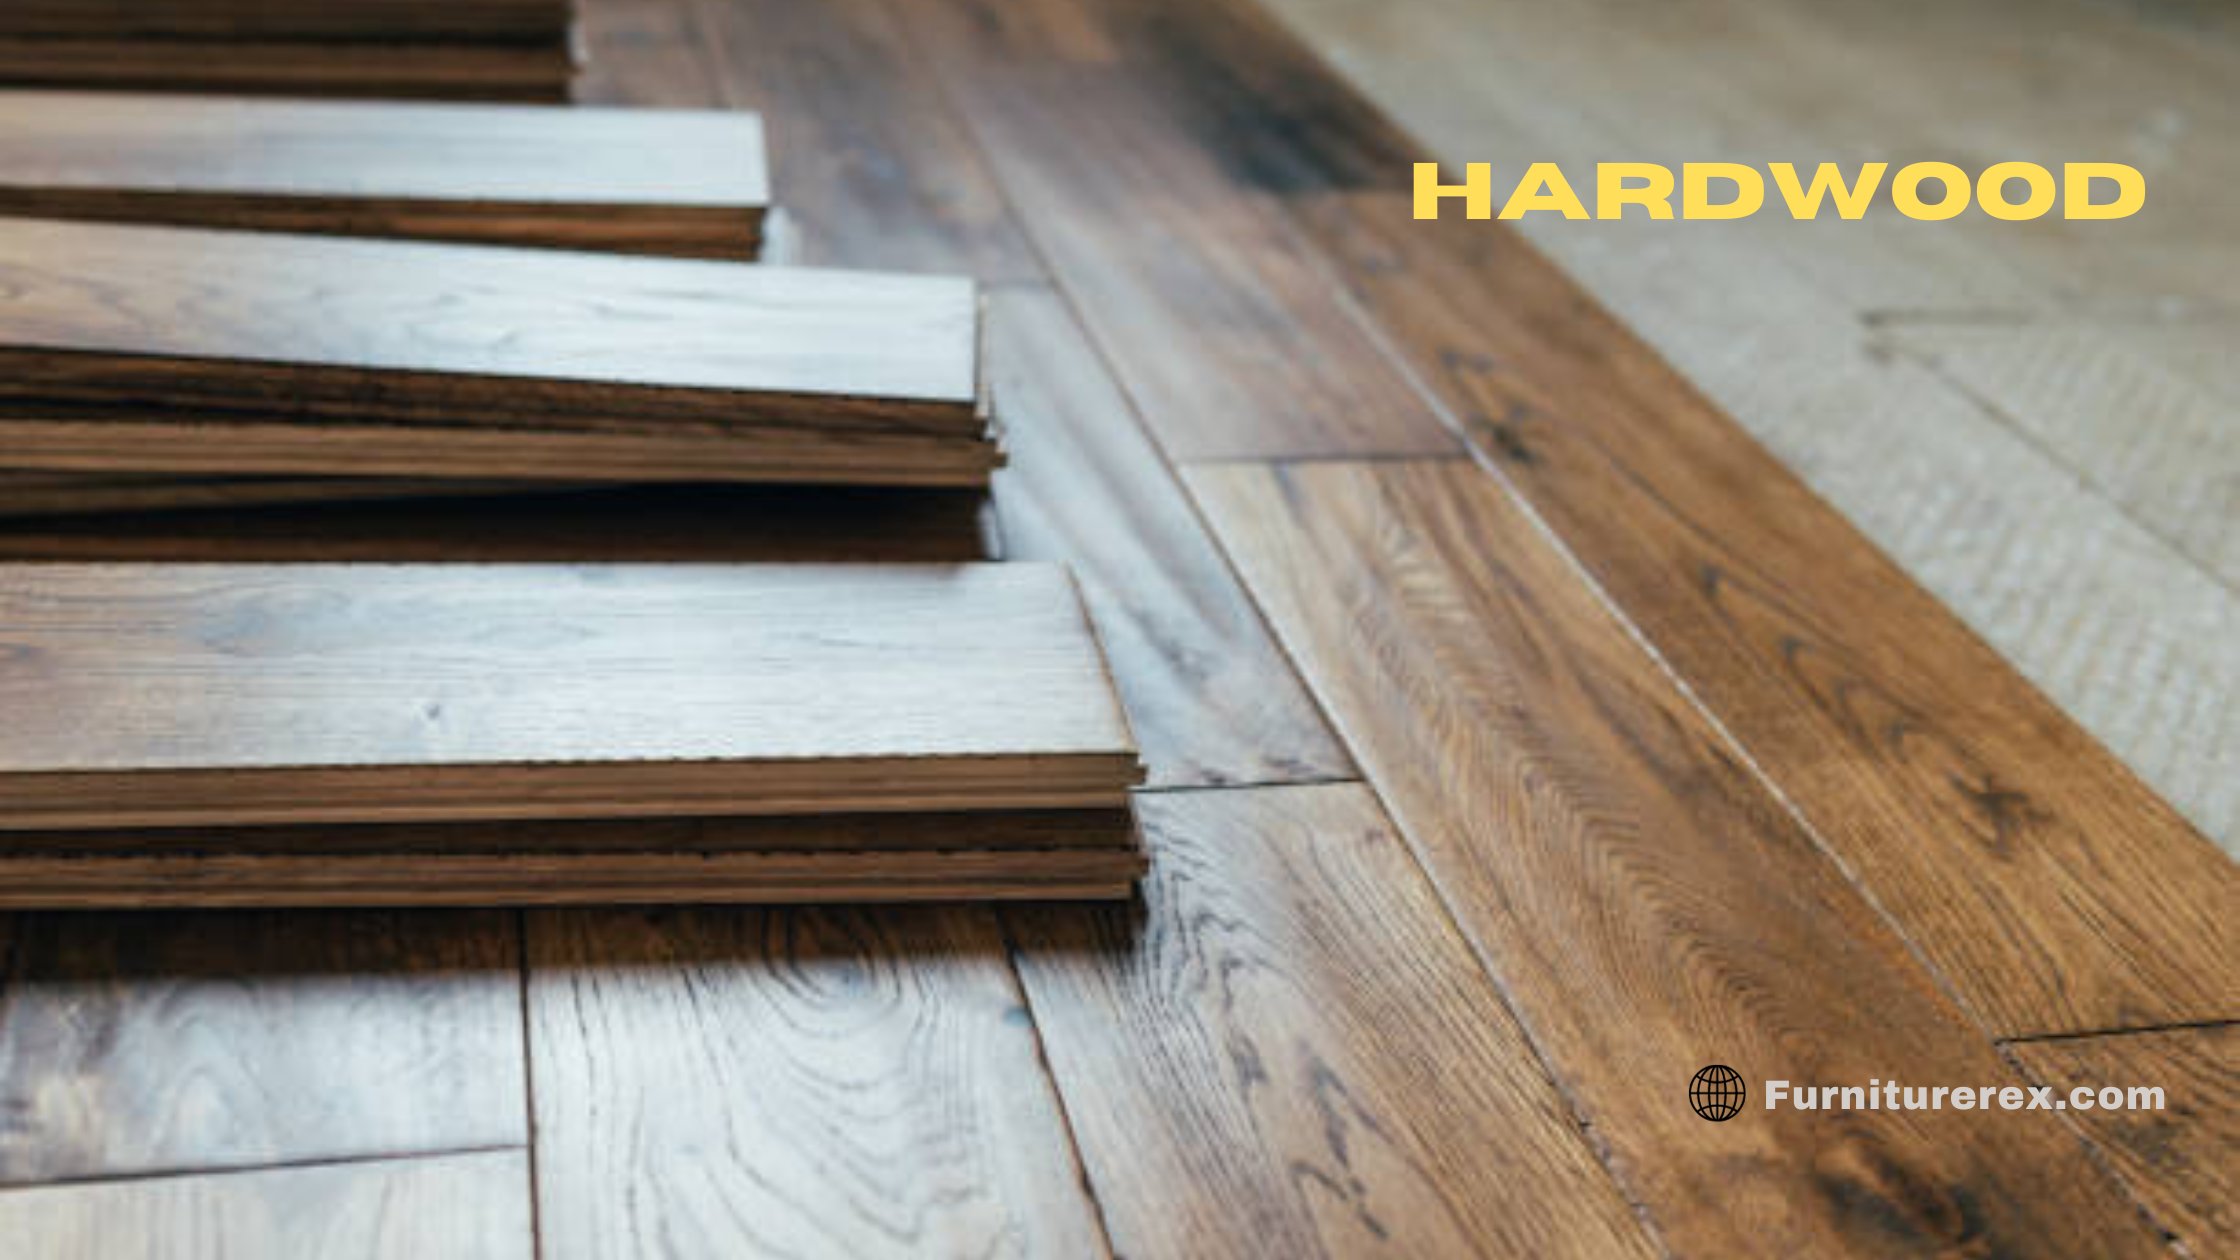 Benefits of Hardwood